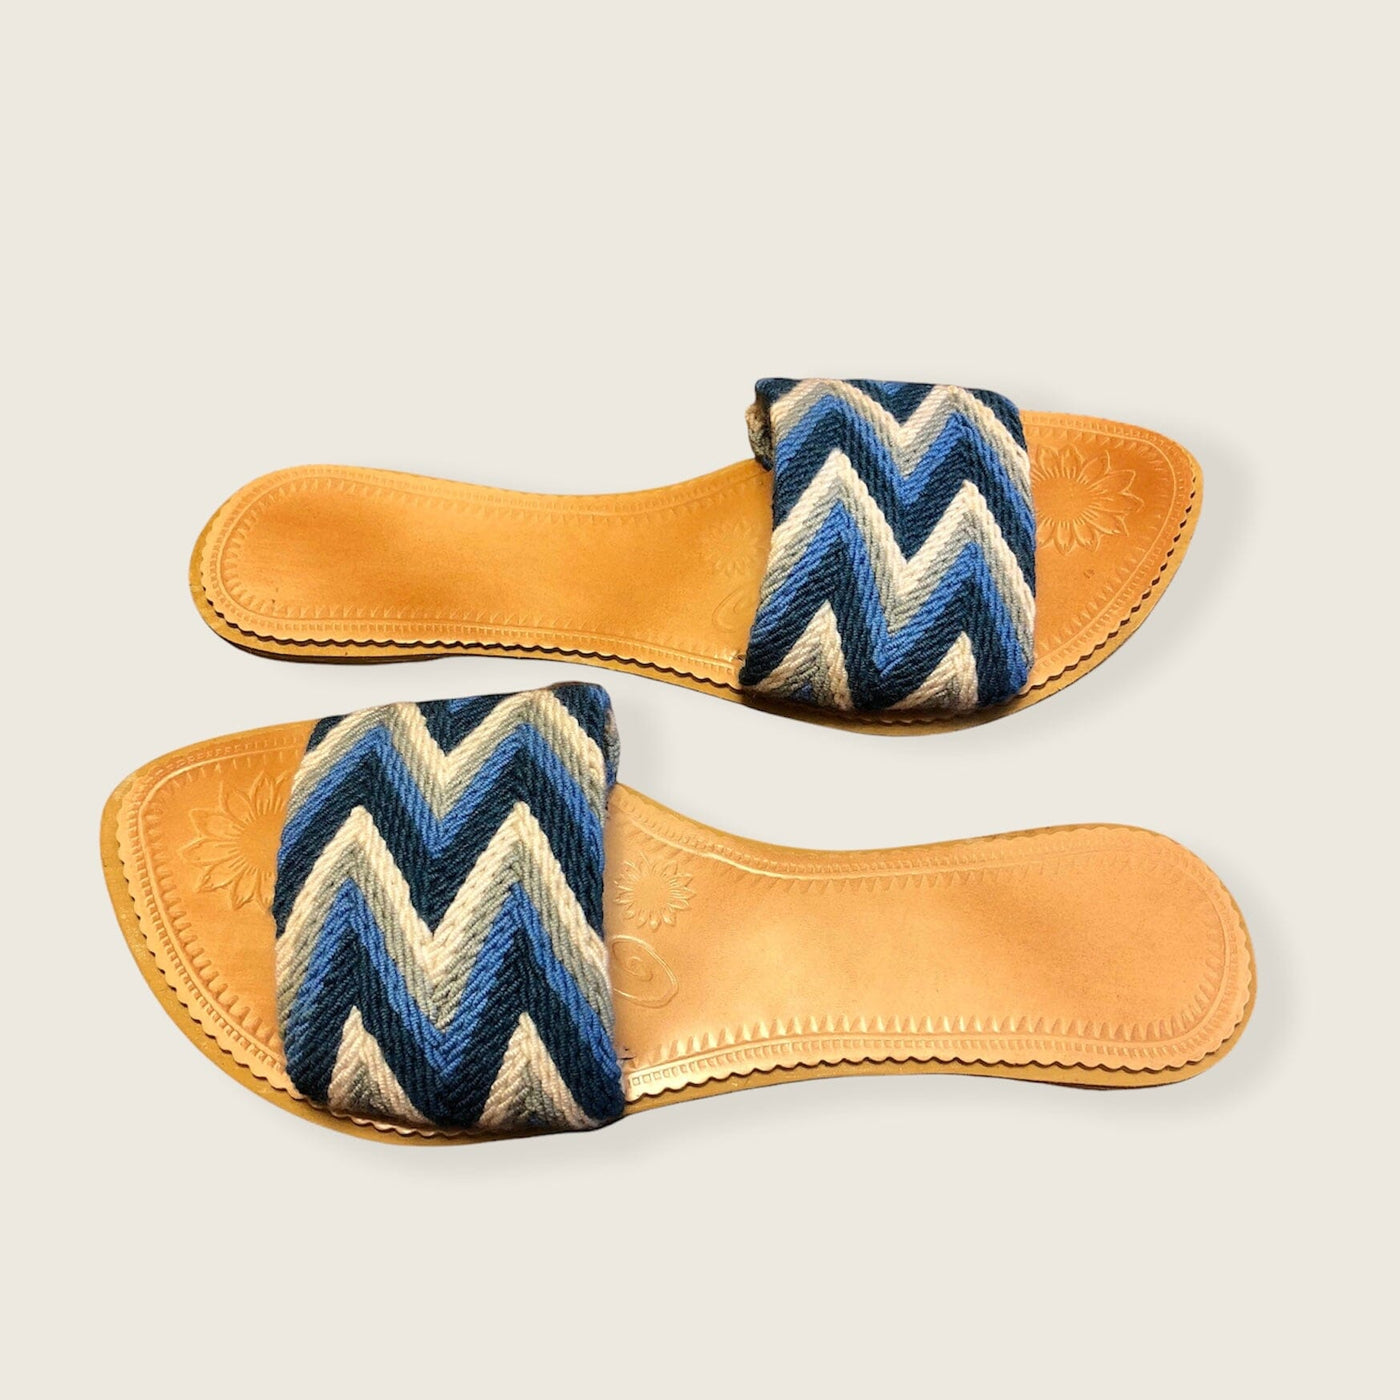 Azula Summer Sandals - Blue Slides - Colorful 4U - Summer Sandals